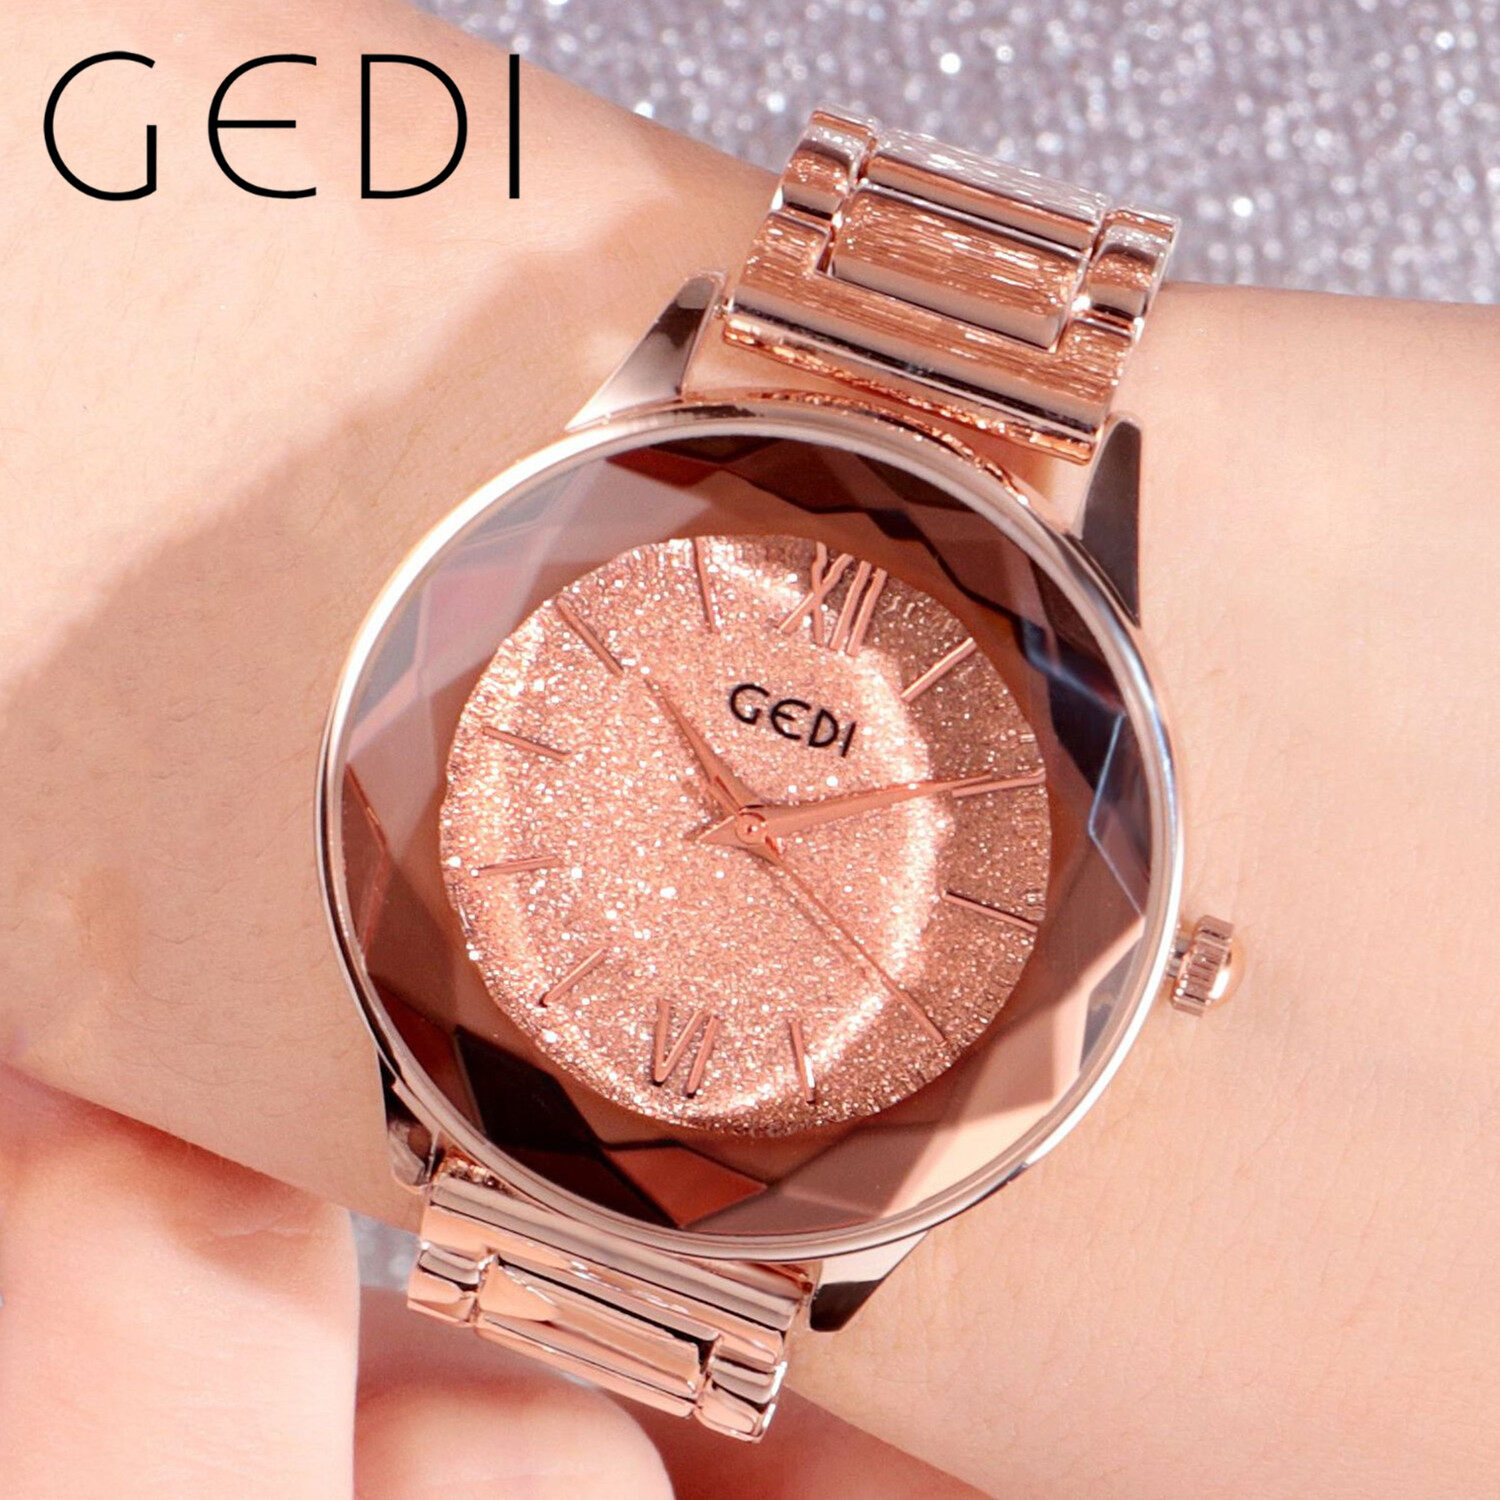 GEDI 81006 มาใหม๊ใหม่  นาฬิกาข้อมือผู้หญิง สายแสตนเลส งามสง่า(มีการชำระเงินเก็บเงินปลายทาง)แท้100% นาฬิกาแฟชั่น